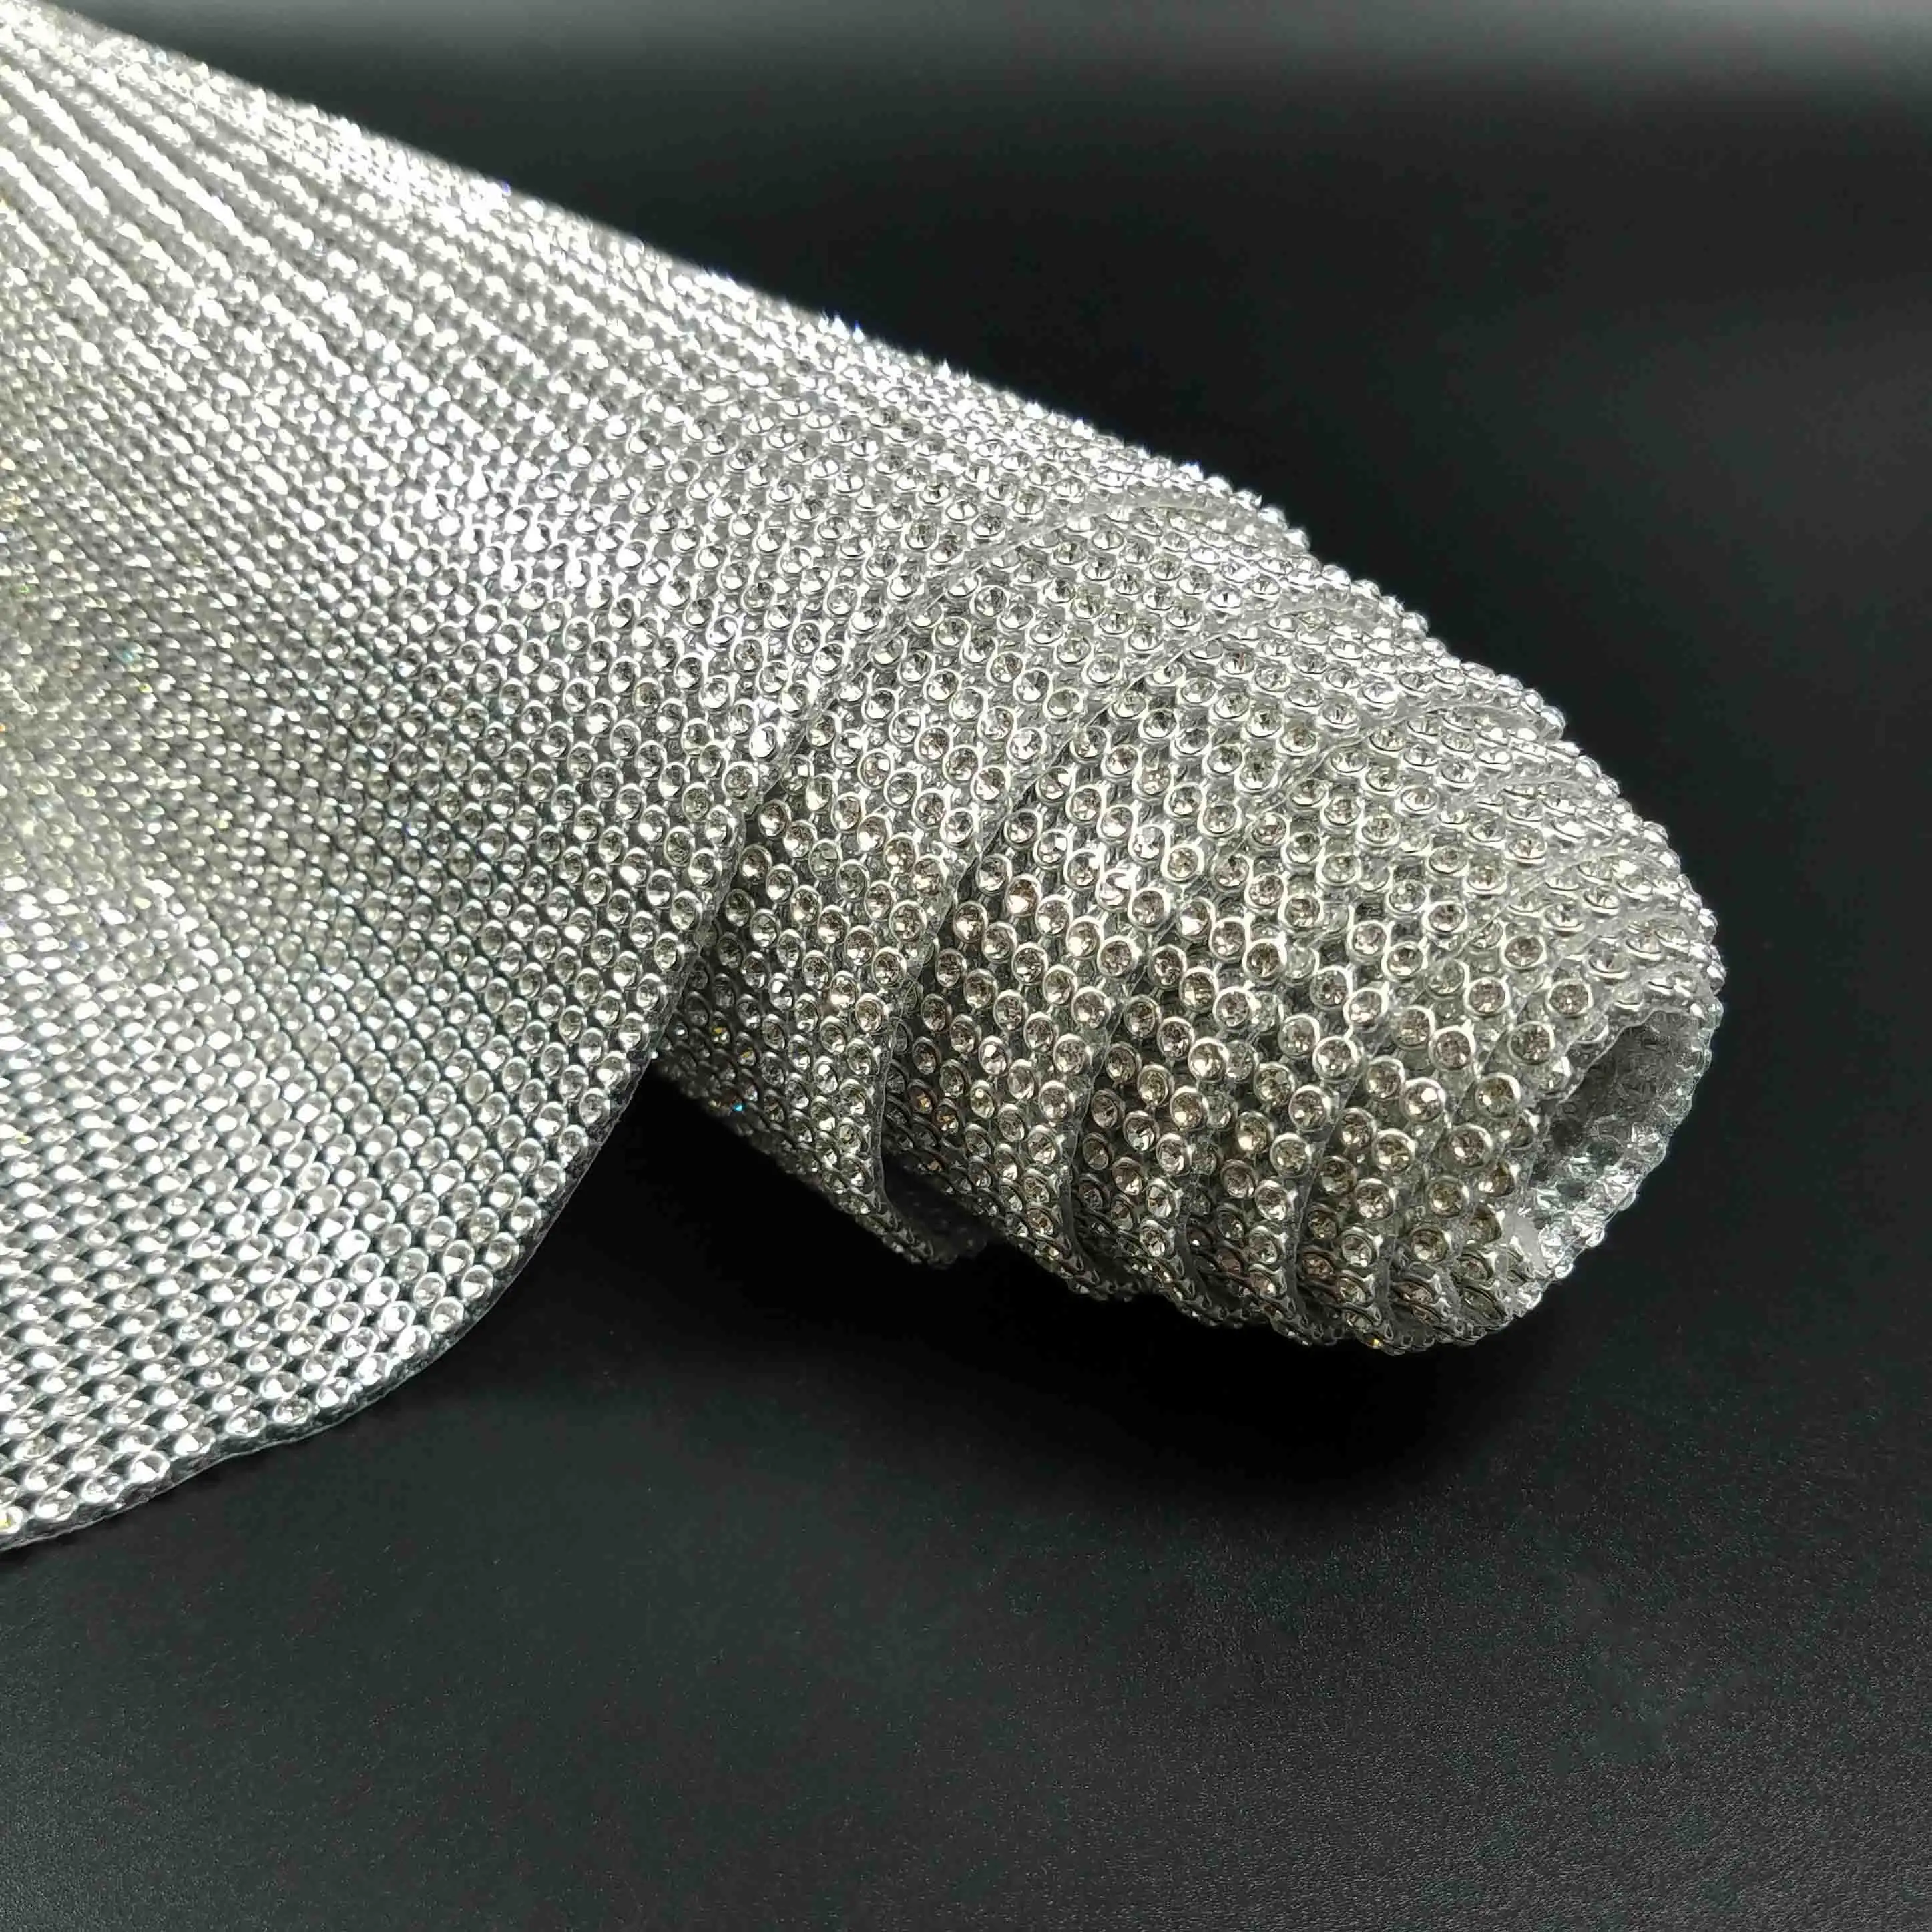 LOCACRYSTAL marca de tela de malla de hoja de aluminio Rhinestone caliente del arreglo de malla